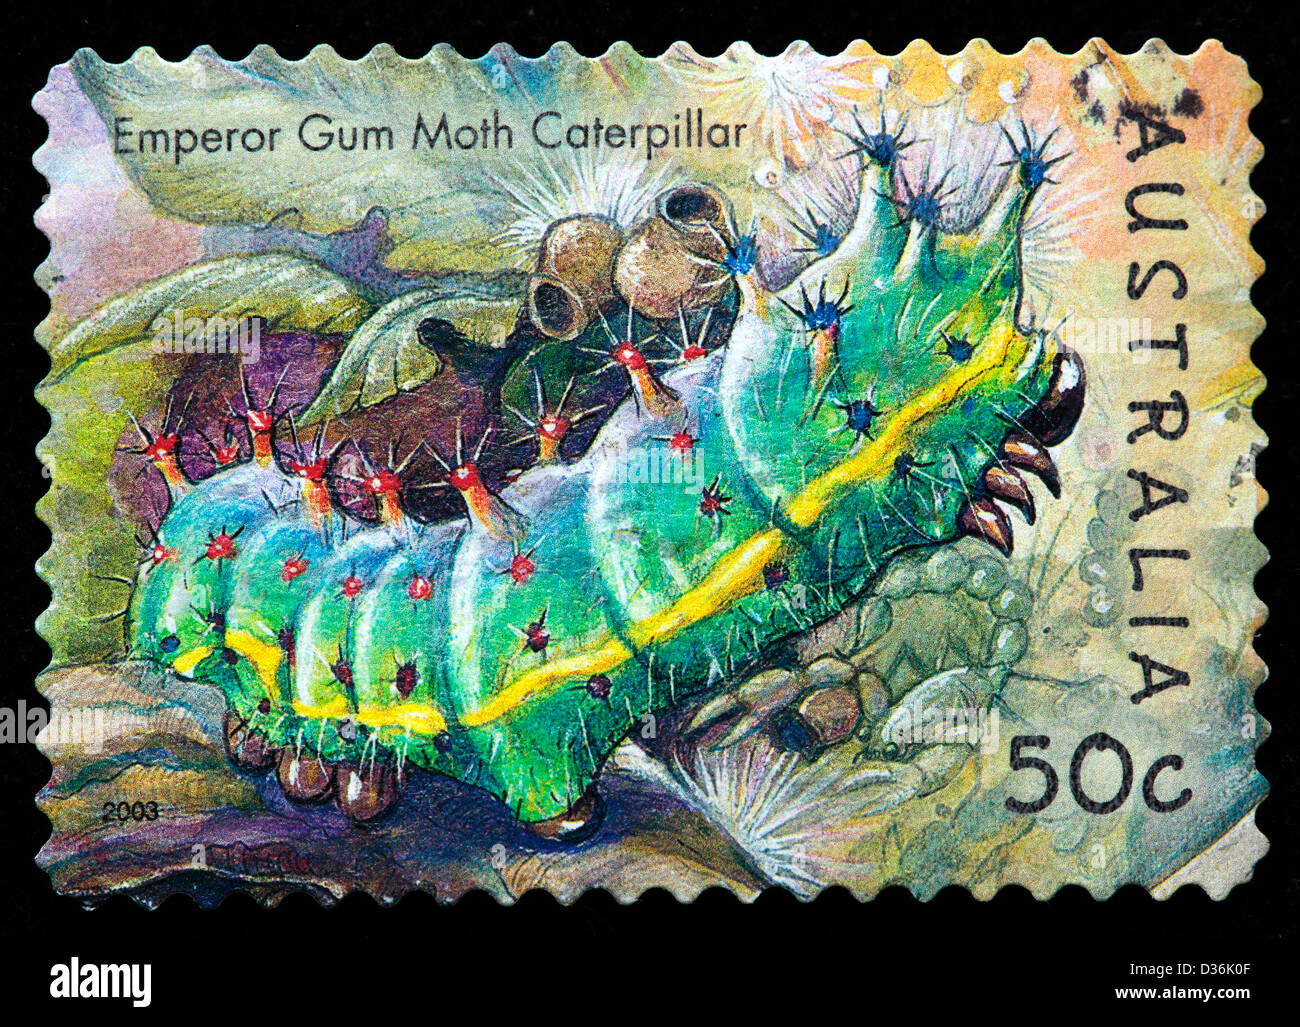 Emperop gum moth caterpillar, timbre-poste, l'Australie, 2003 Banque D'Images